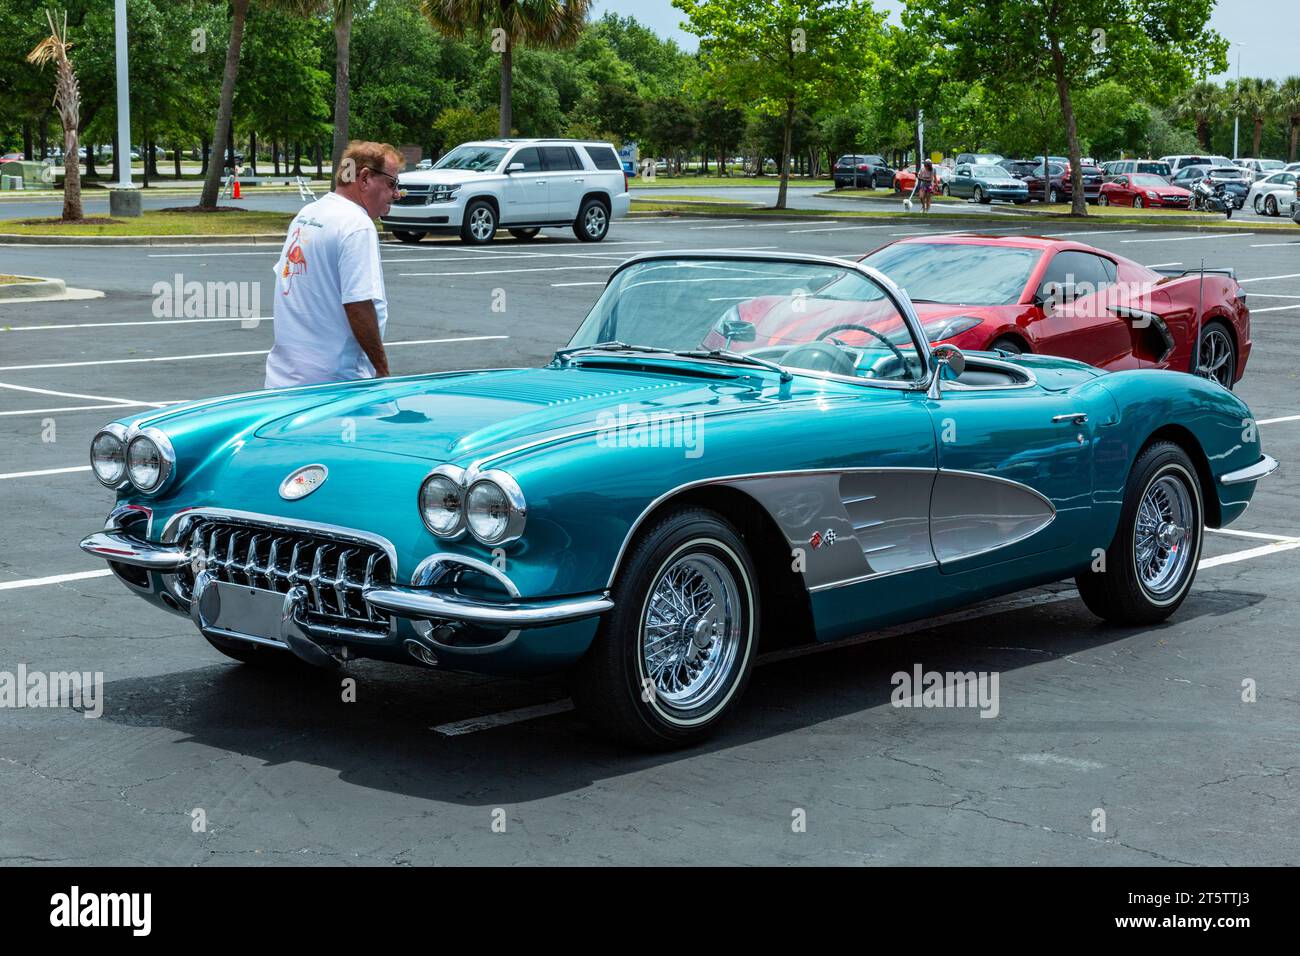 Un uomo ispeziona un'antica vettura sportiva decappottabile Chevrolet Corvette blu a Myrtle Beach, South Carolina, USA. Foto Stock